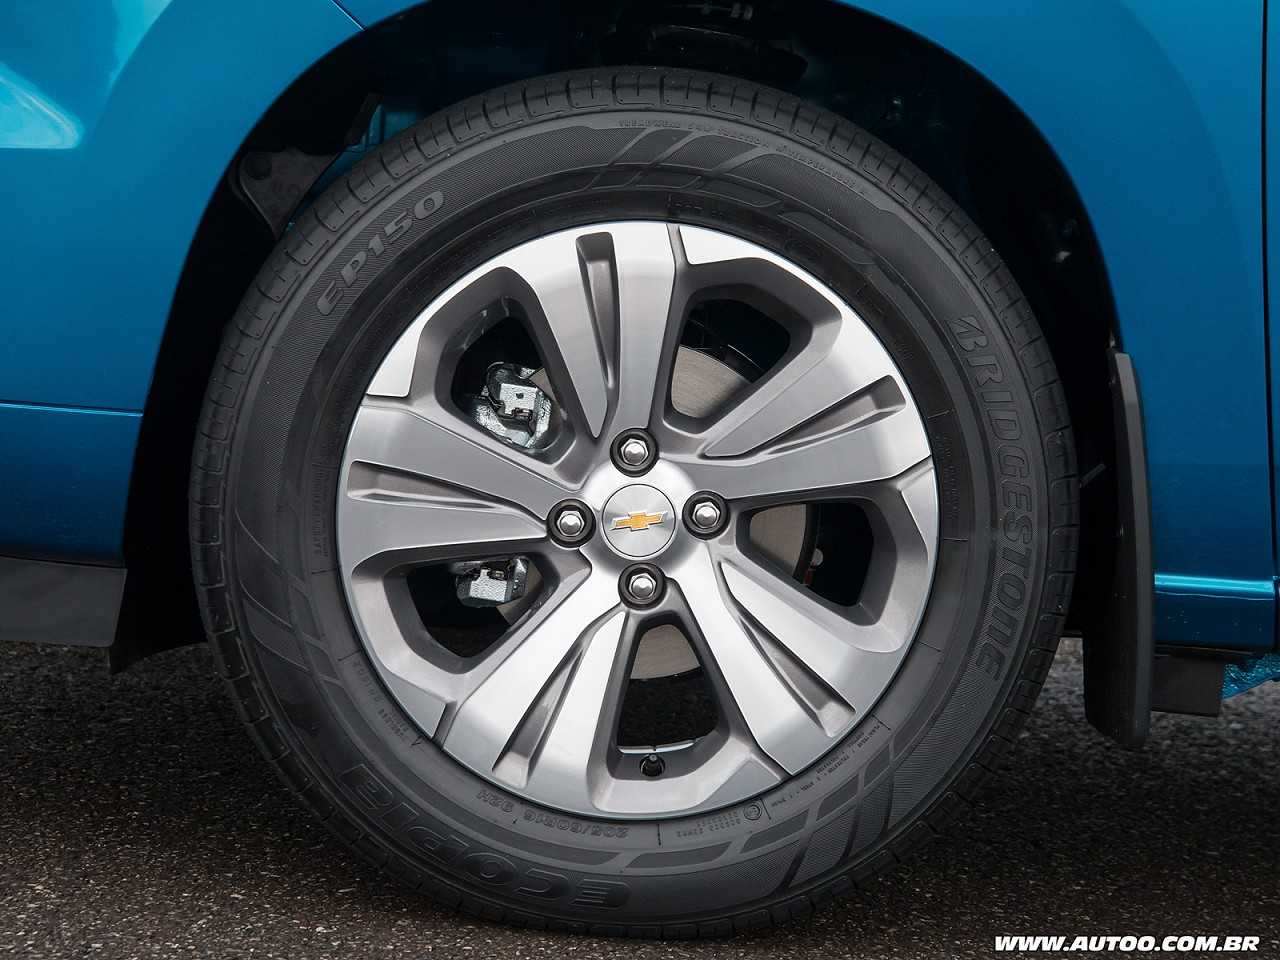 ChevroletSpin 2019 - rodas